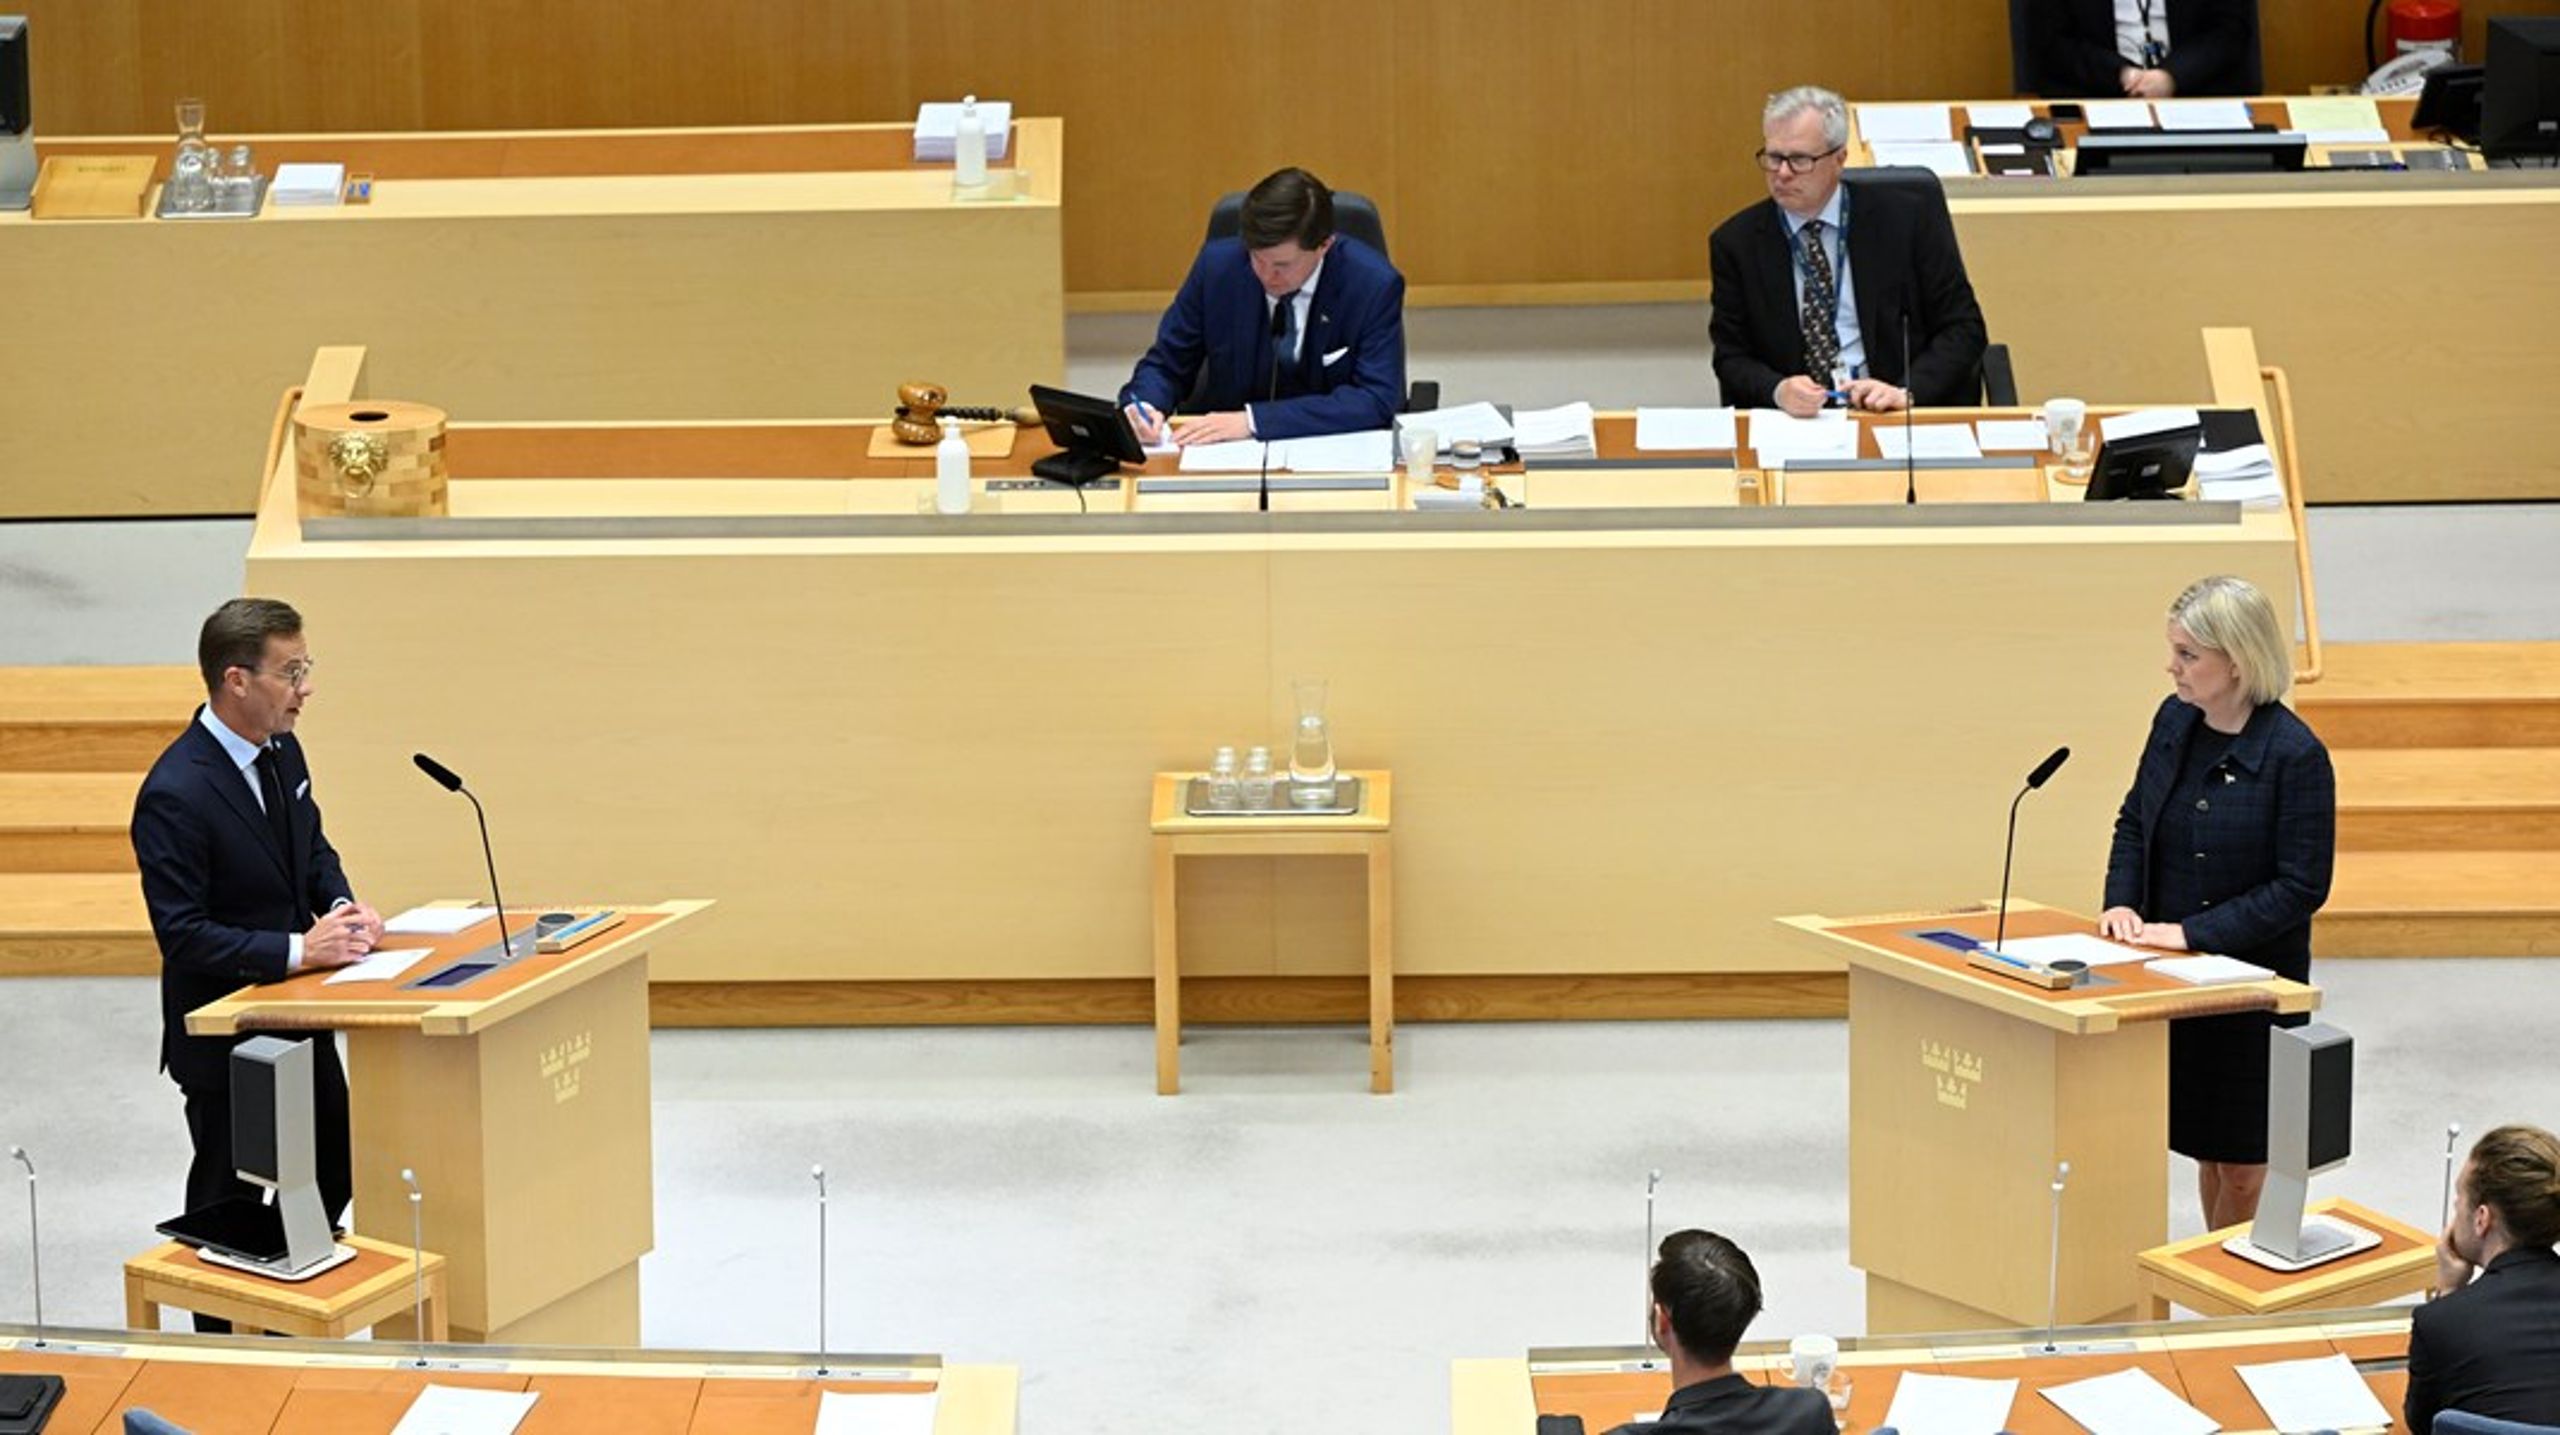 Senast statsministern och oppositionsledaren Magdalena Andersson (S) möttes i en riksdagsdebatt var i mitten av juni.